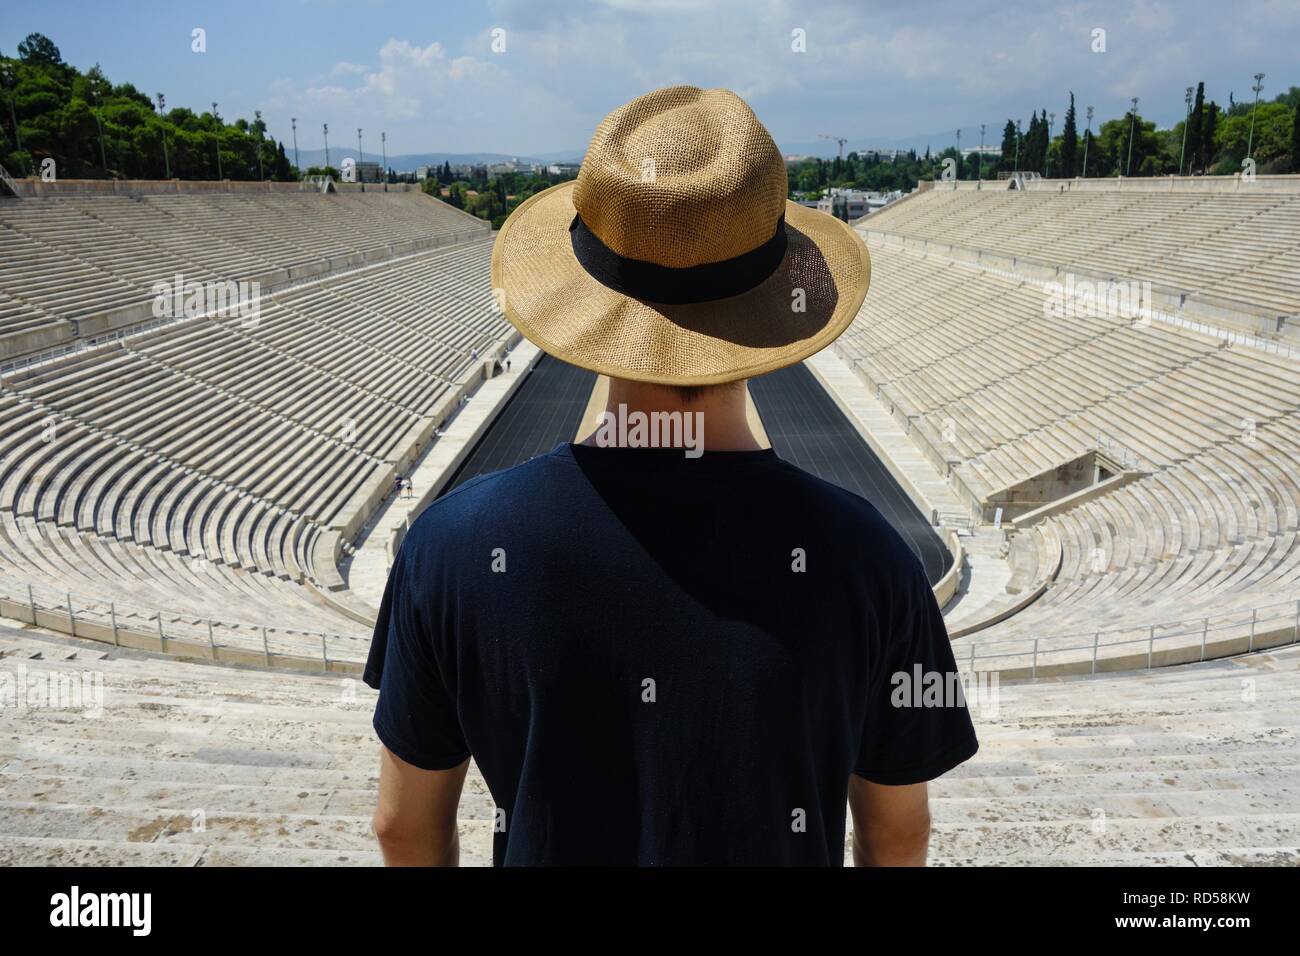 Vue sur le stade panathénaïque dans un chapeau de paille, Athènes, Grèce Banque D'Images